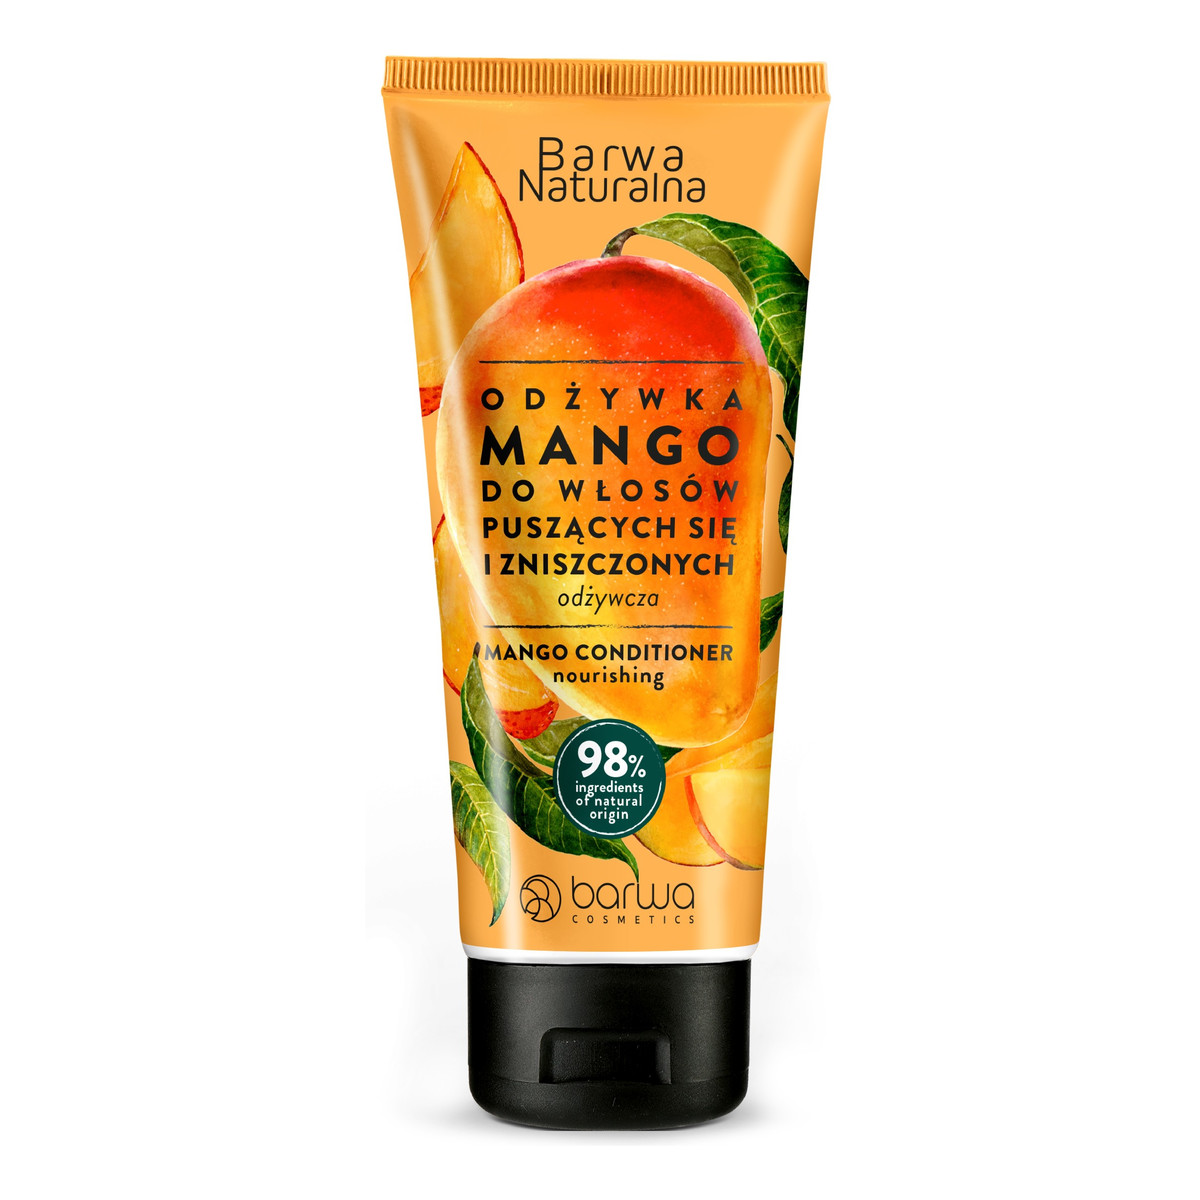 Barwa Naturalna Odżywka do włosów puszących się i zniszczonych odżywcza Mango 200ml